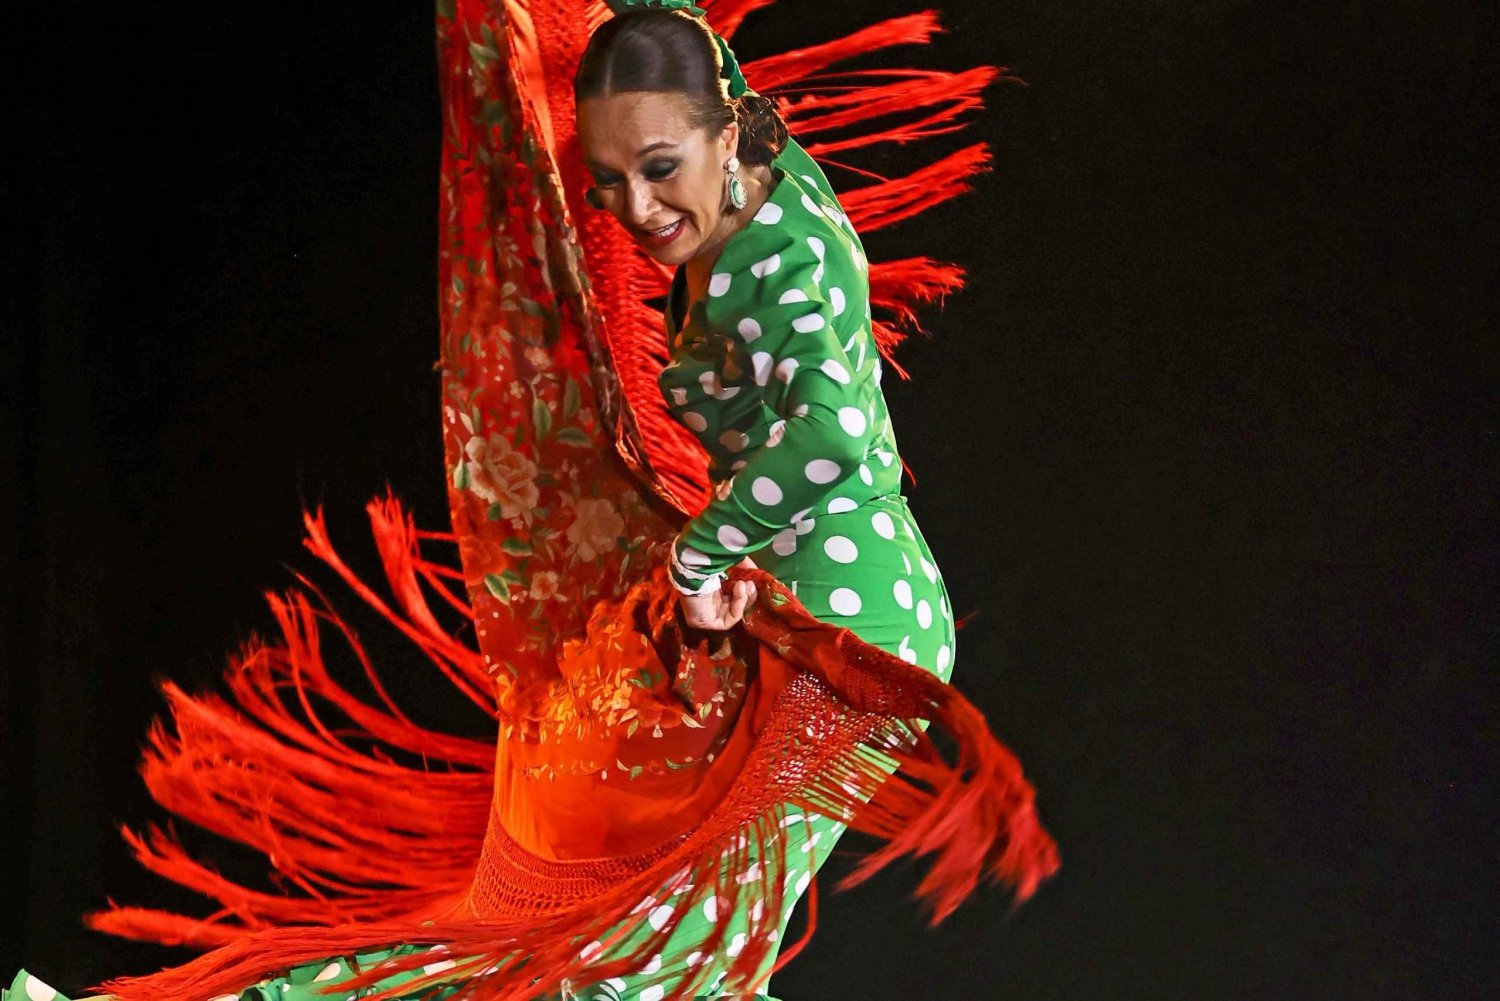 Palma: Spettacolo di flamenco al Tablao Flamenco Alma con drink